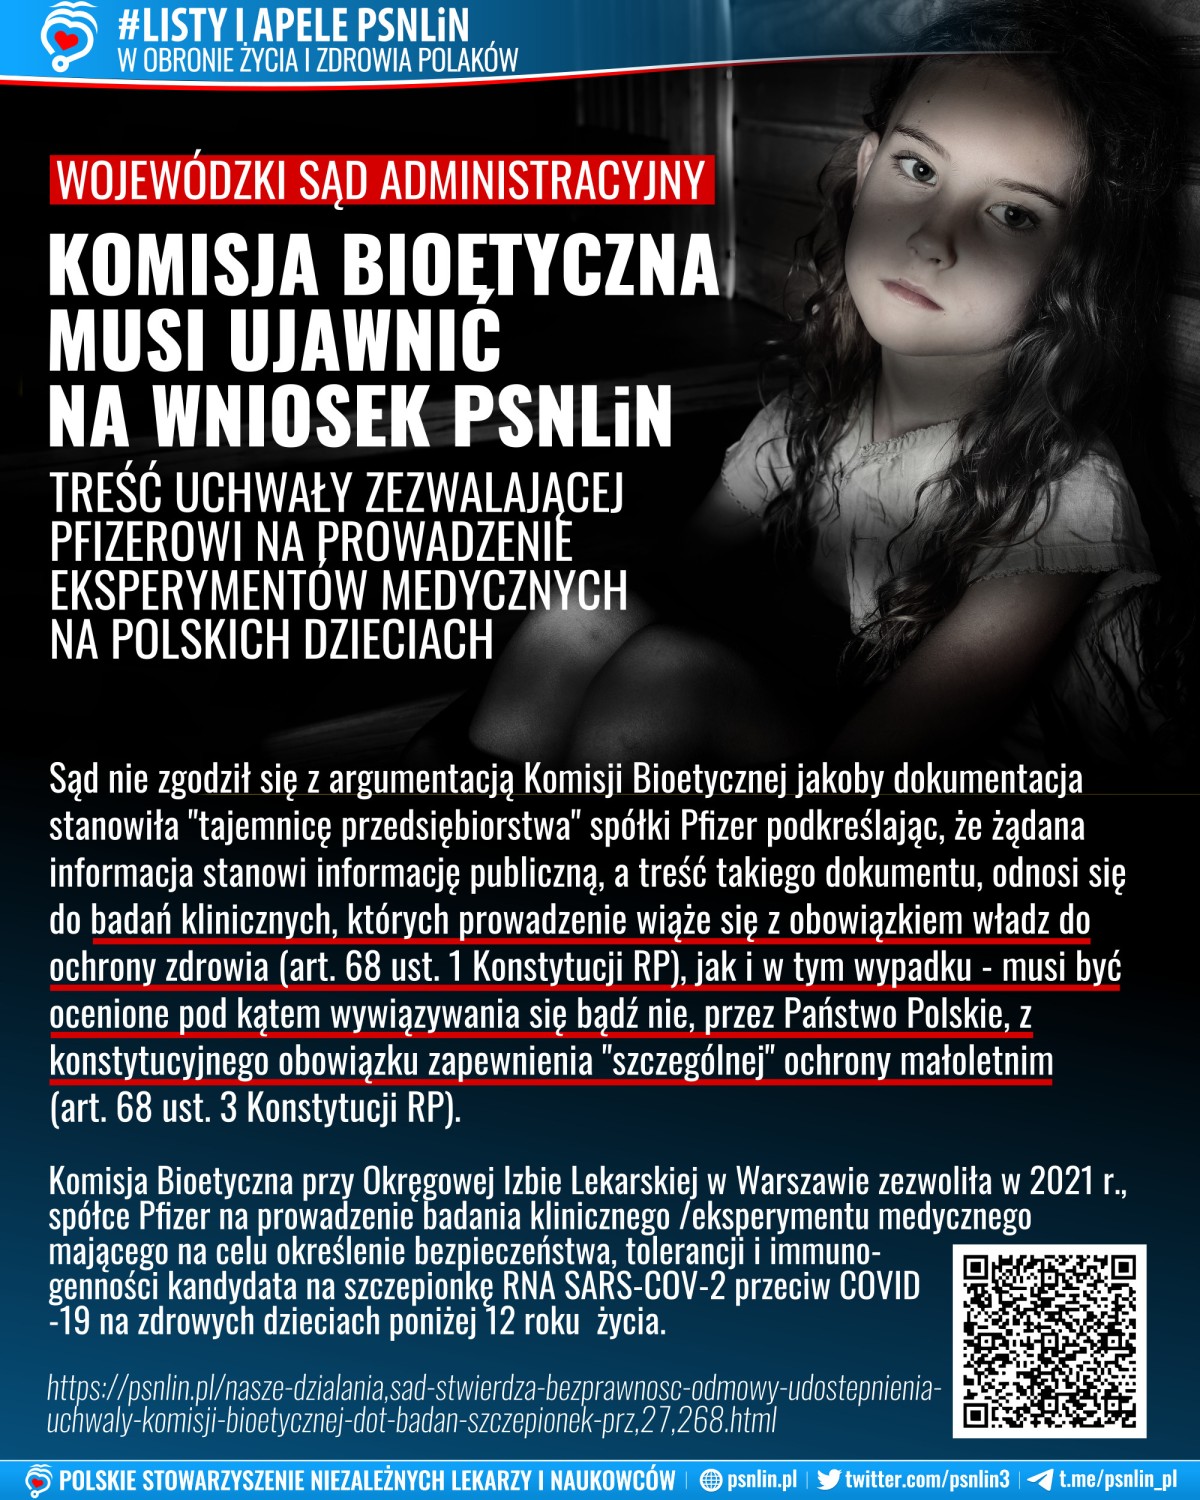 Listy_i_apele_PSNLiN-komisja_bioetyczna_musi_ujawnić_treść_uchwały_zezwalającej_na_eksperymenty_medyczne_na_dzieciach-1